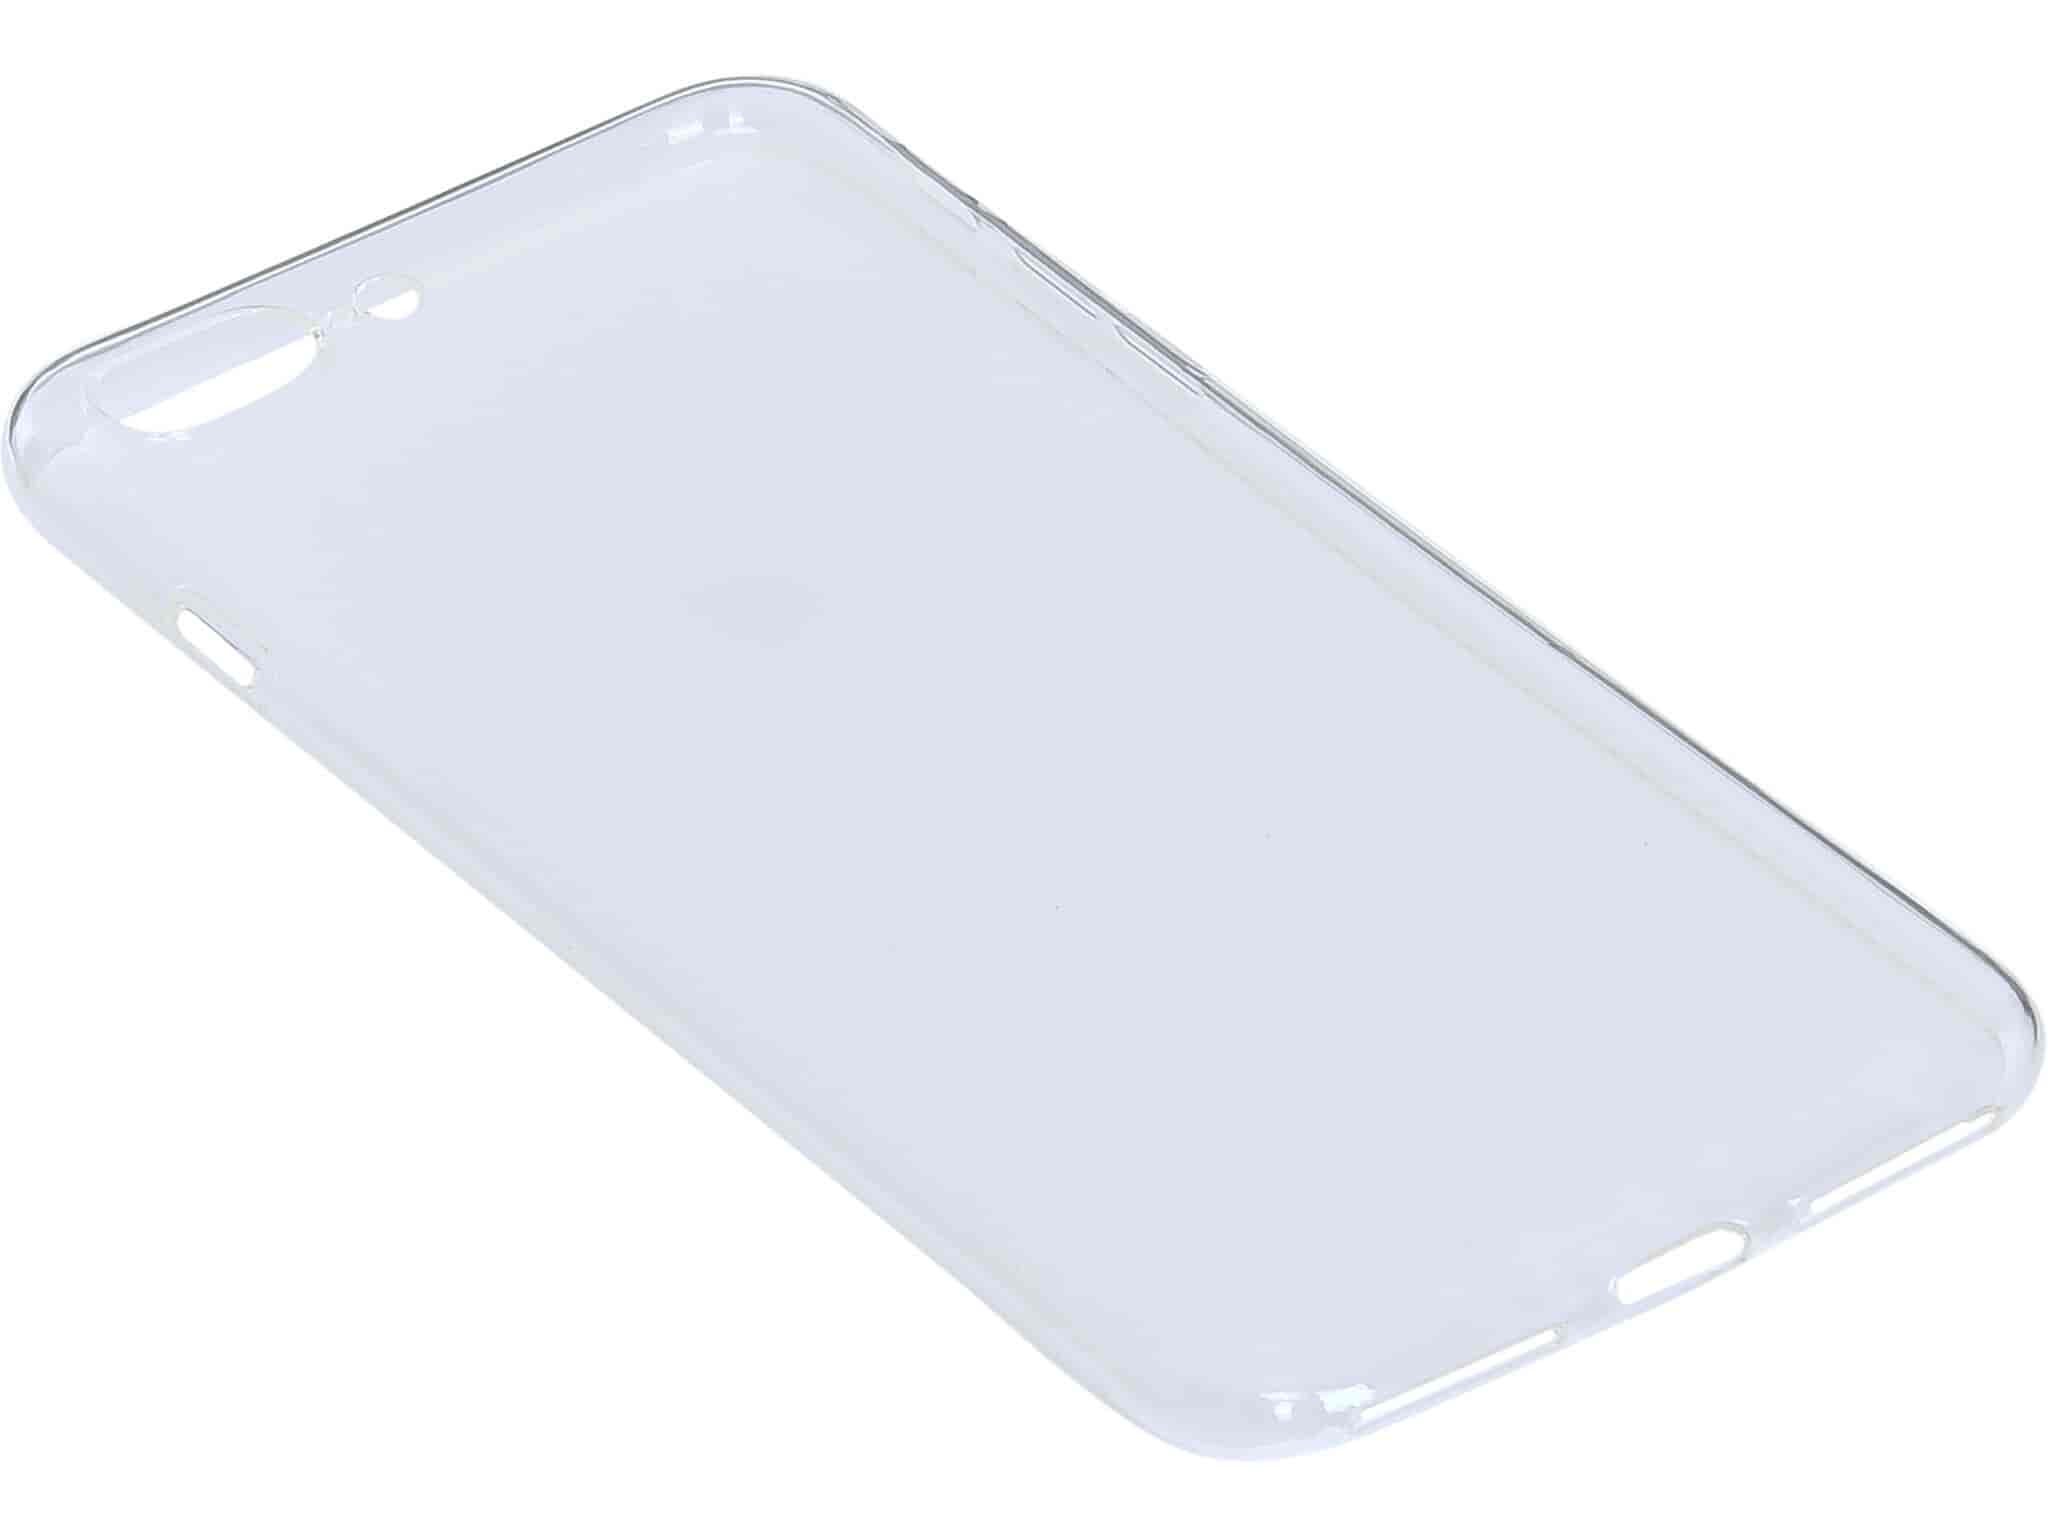 Soft Cover iPhone 7 Plus, Transparent, Sandberg